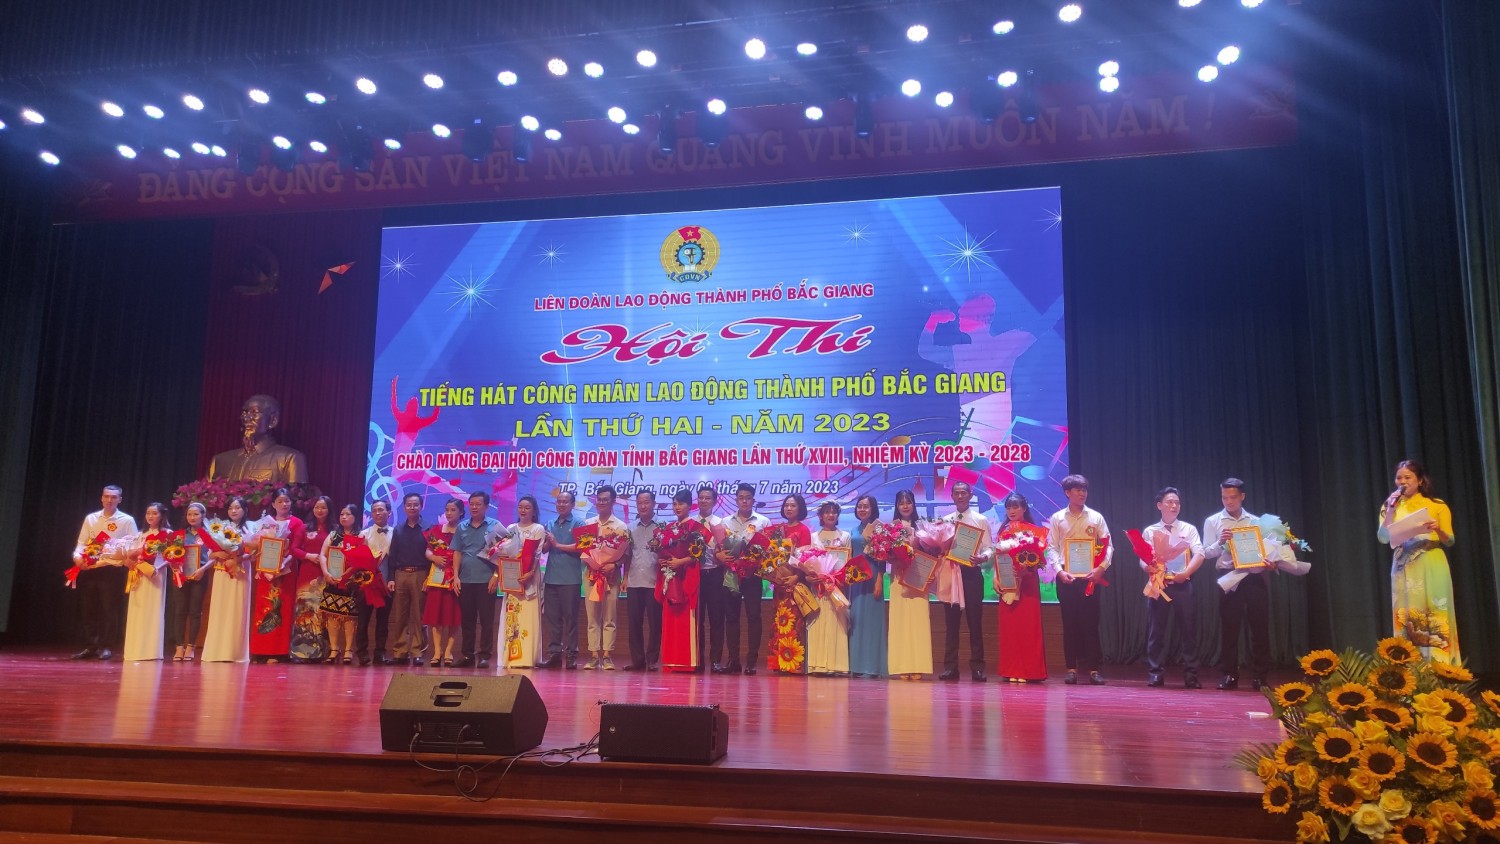 Tham gia Hội thi “Tiếng hát công nhân lao động thành phố Bắc Giang” lần thứ hai - năm 2023.